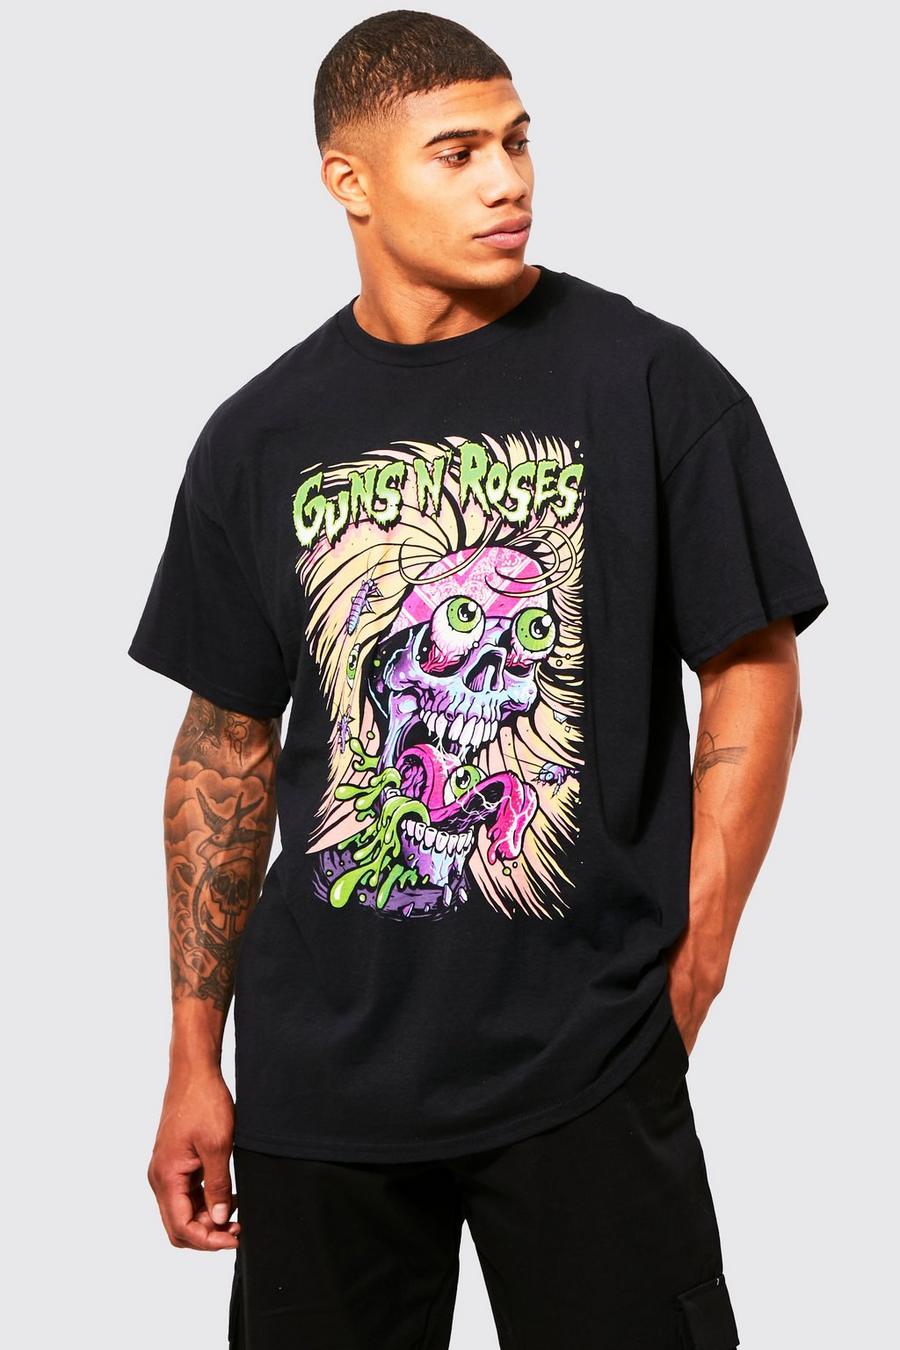 Black Guns 'N' Roses Eyeball Licensed T-Shirt